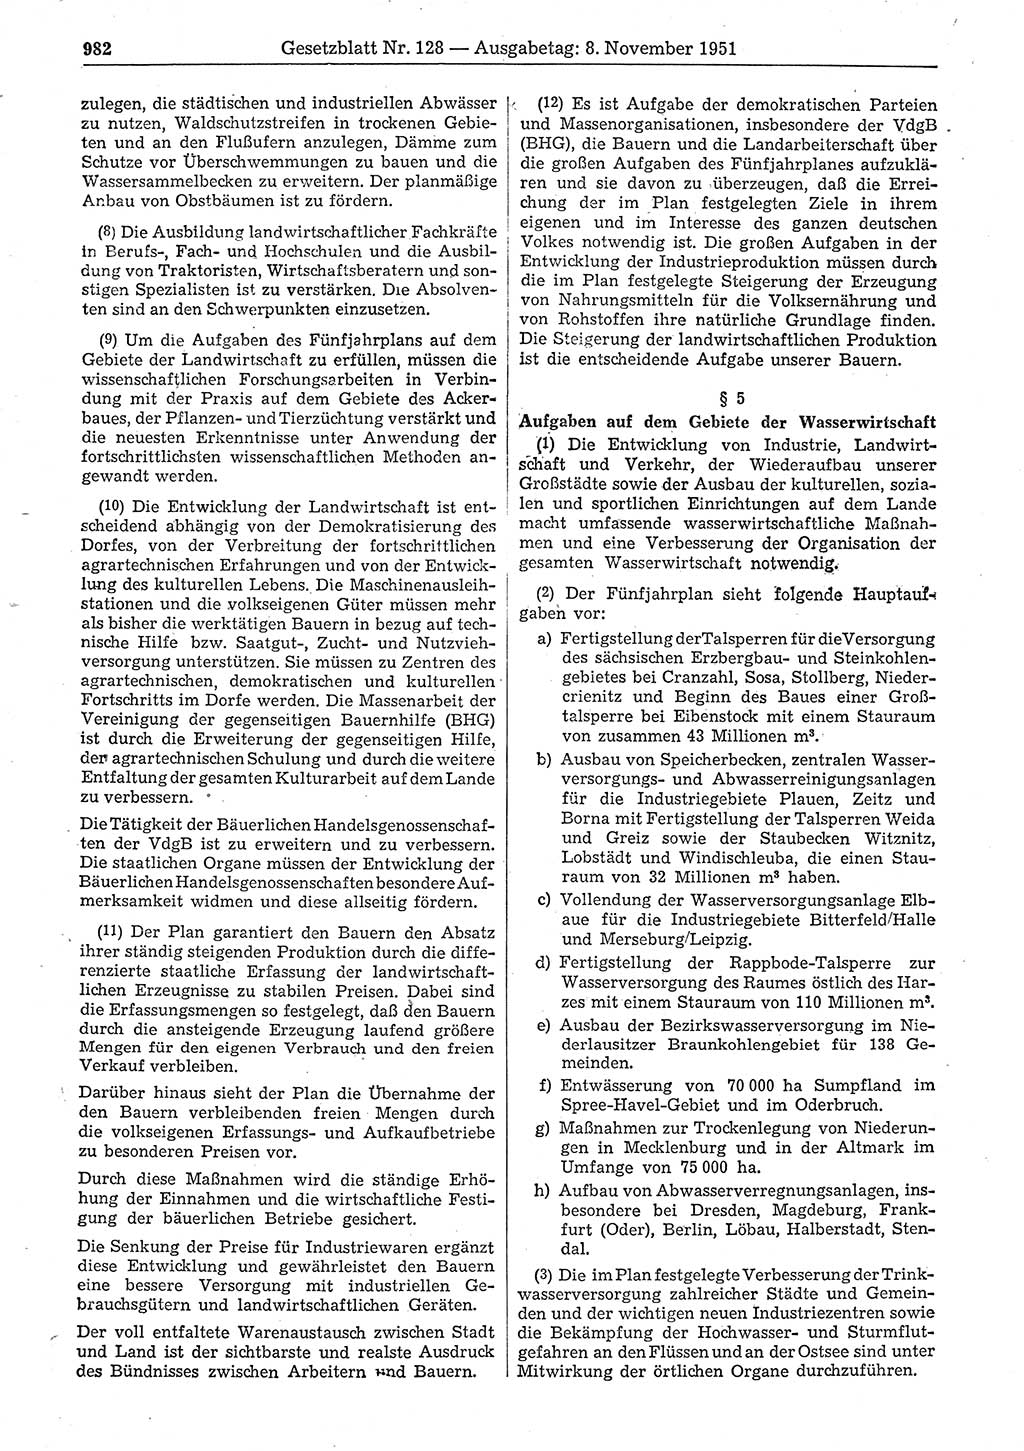 Gesetzblatt (GBl.) der Deutschen Demokratischen Republik (DDR) 1951, Seite 982 (GBl. DDR 1951, S. 982)